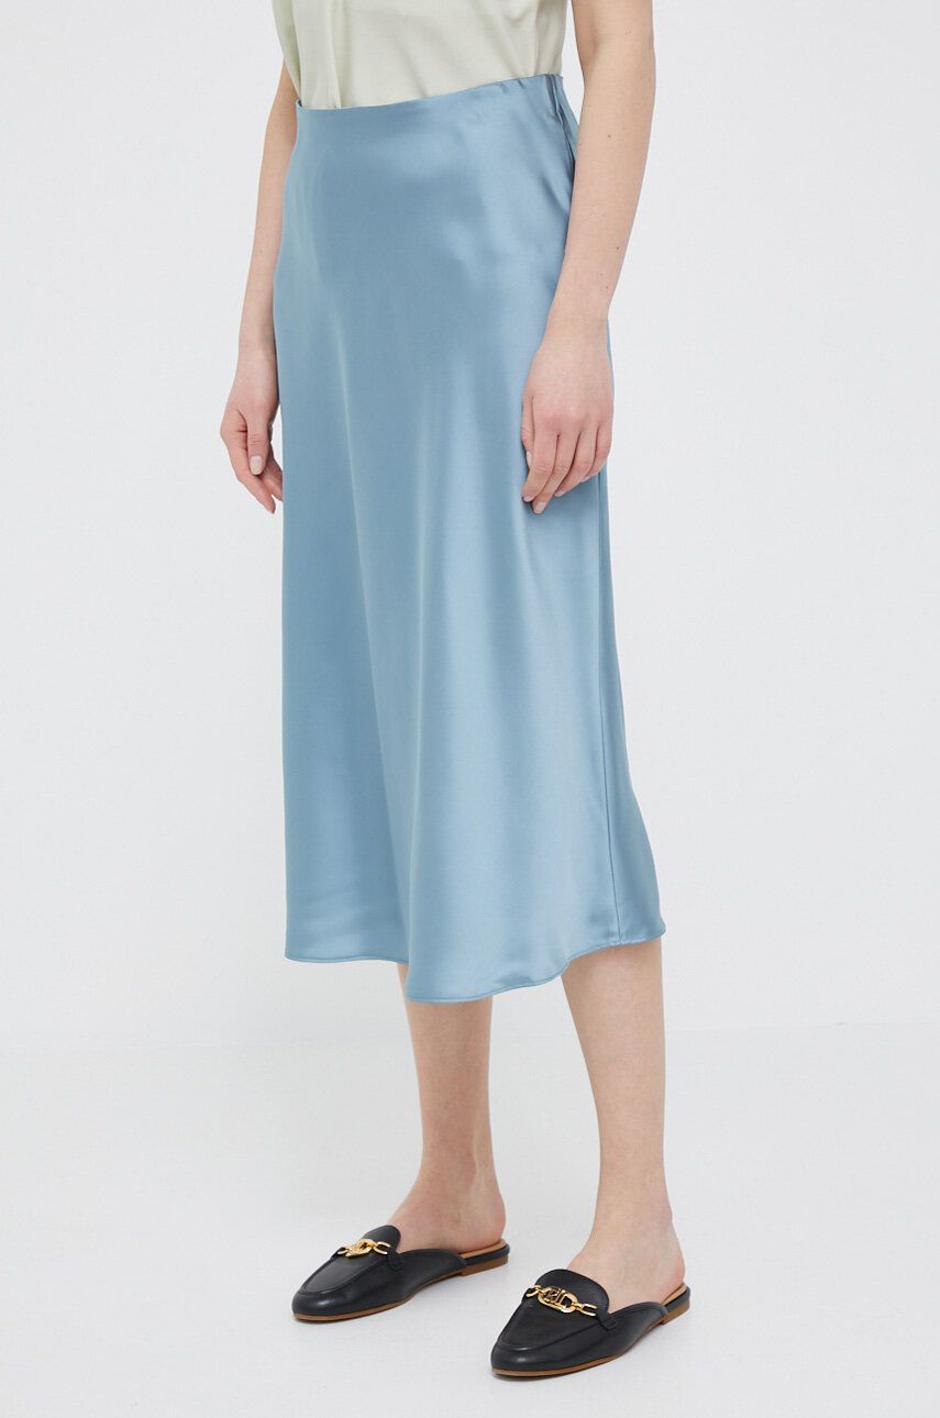 Foto: Answear, Polo Ralph Lauren, svijetlo plava suknja od satena (129,99 eura) | Autor: 